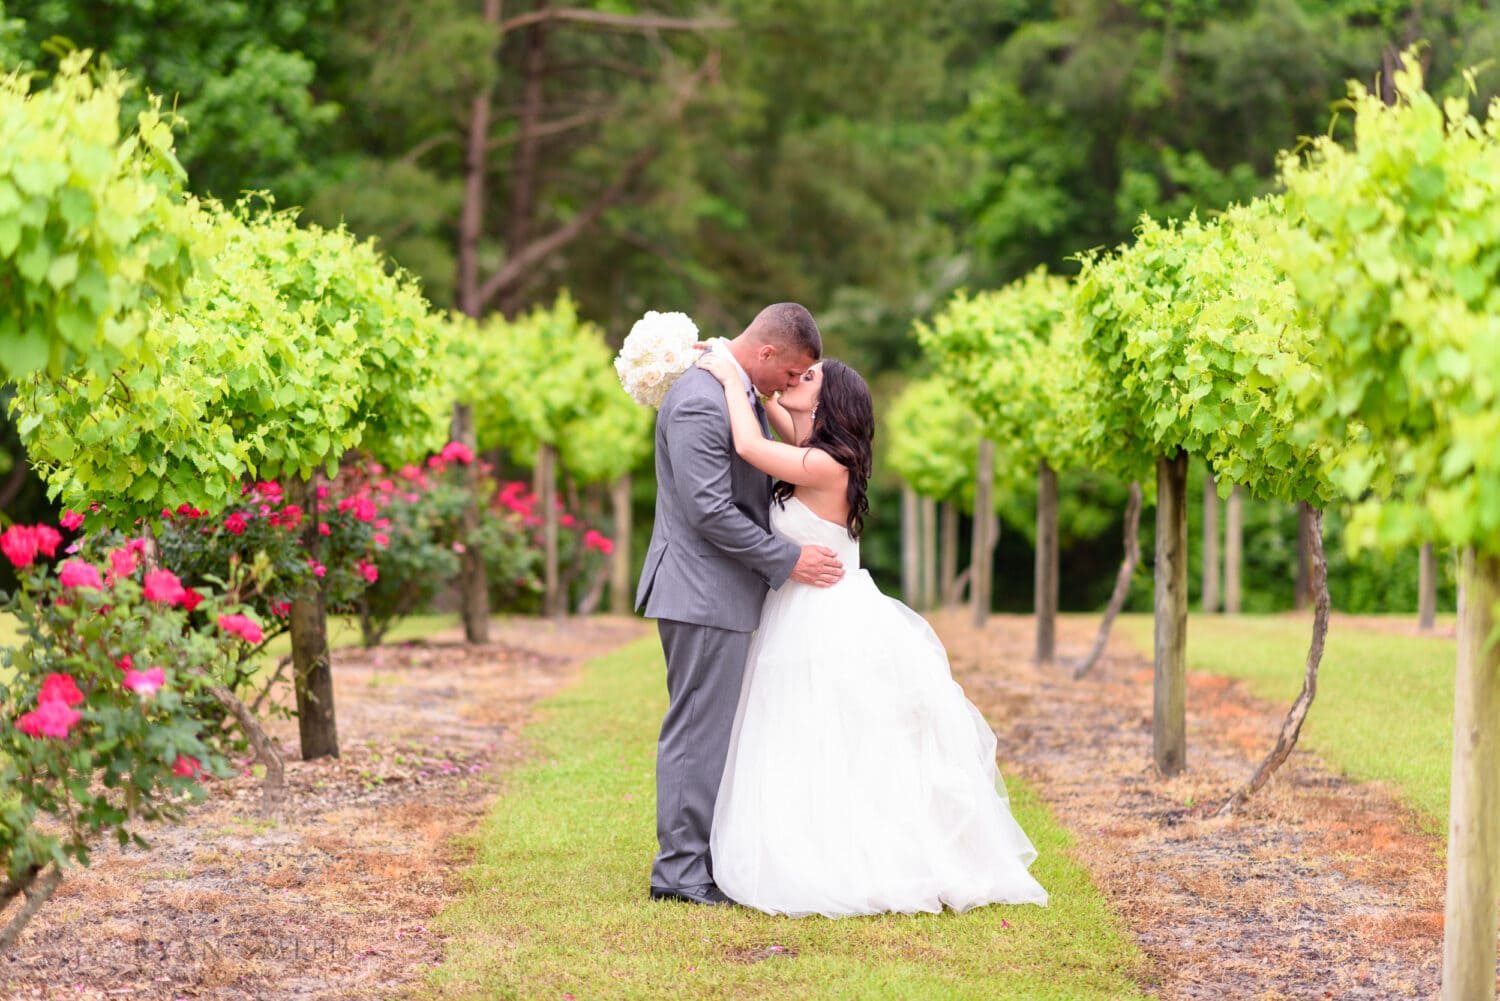 Bride and groom kissing in the vineyard - La Belle Amie Vineyard